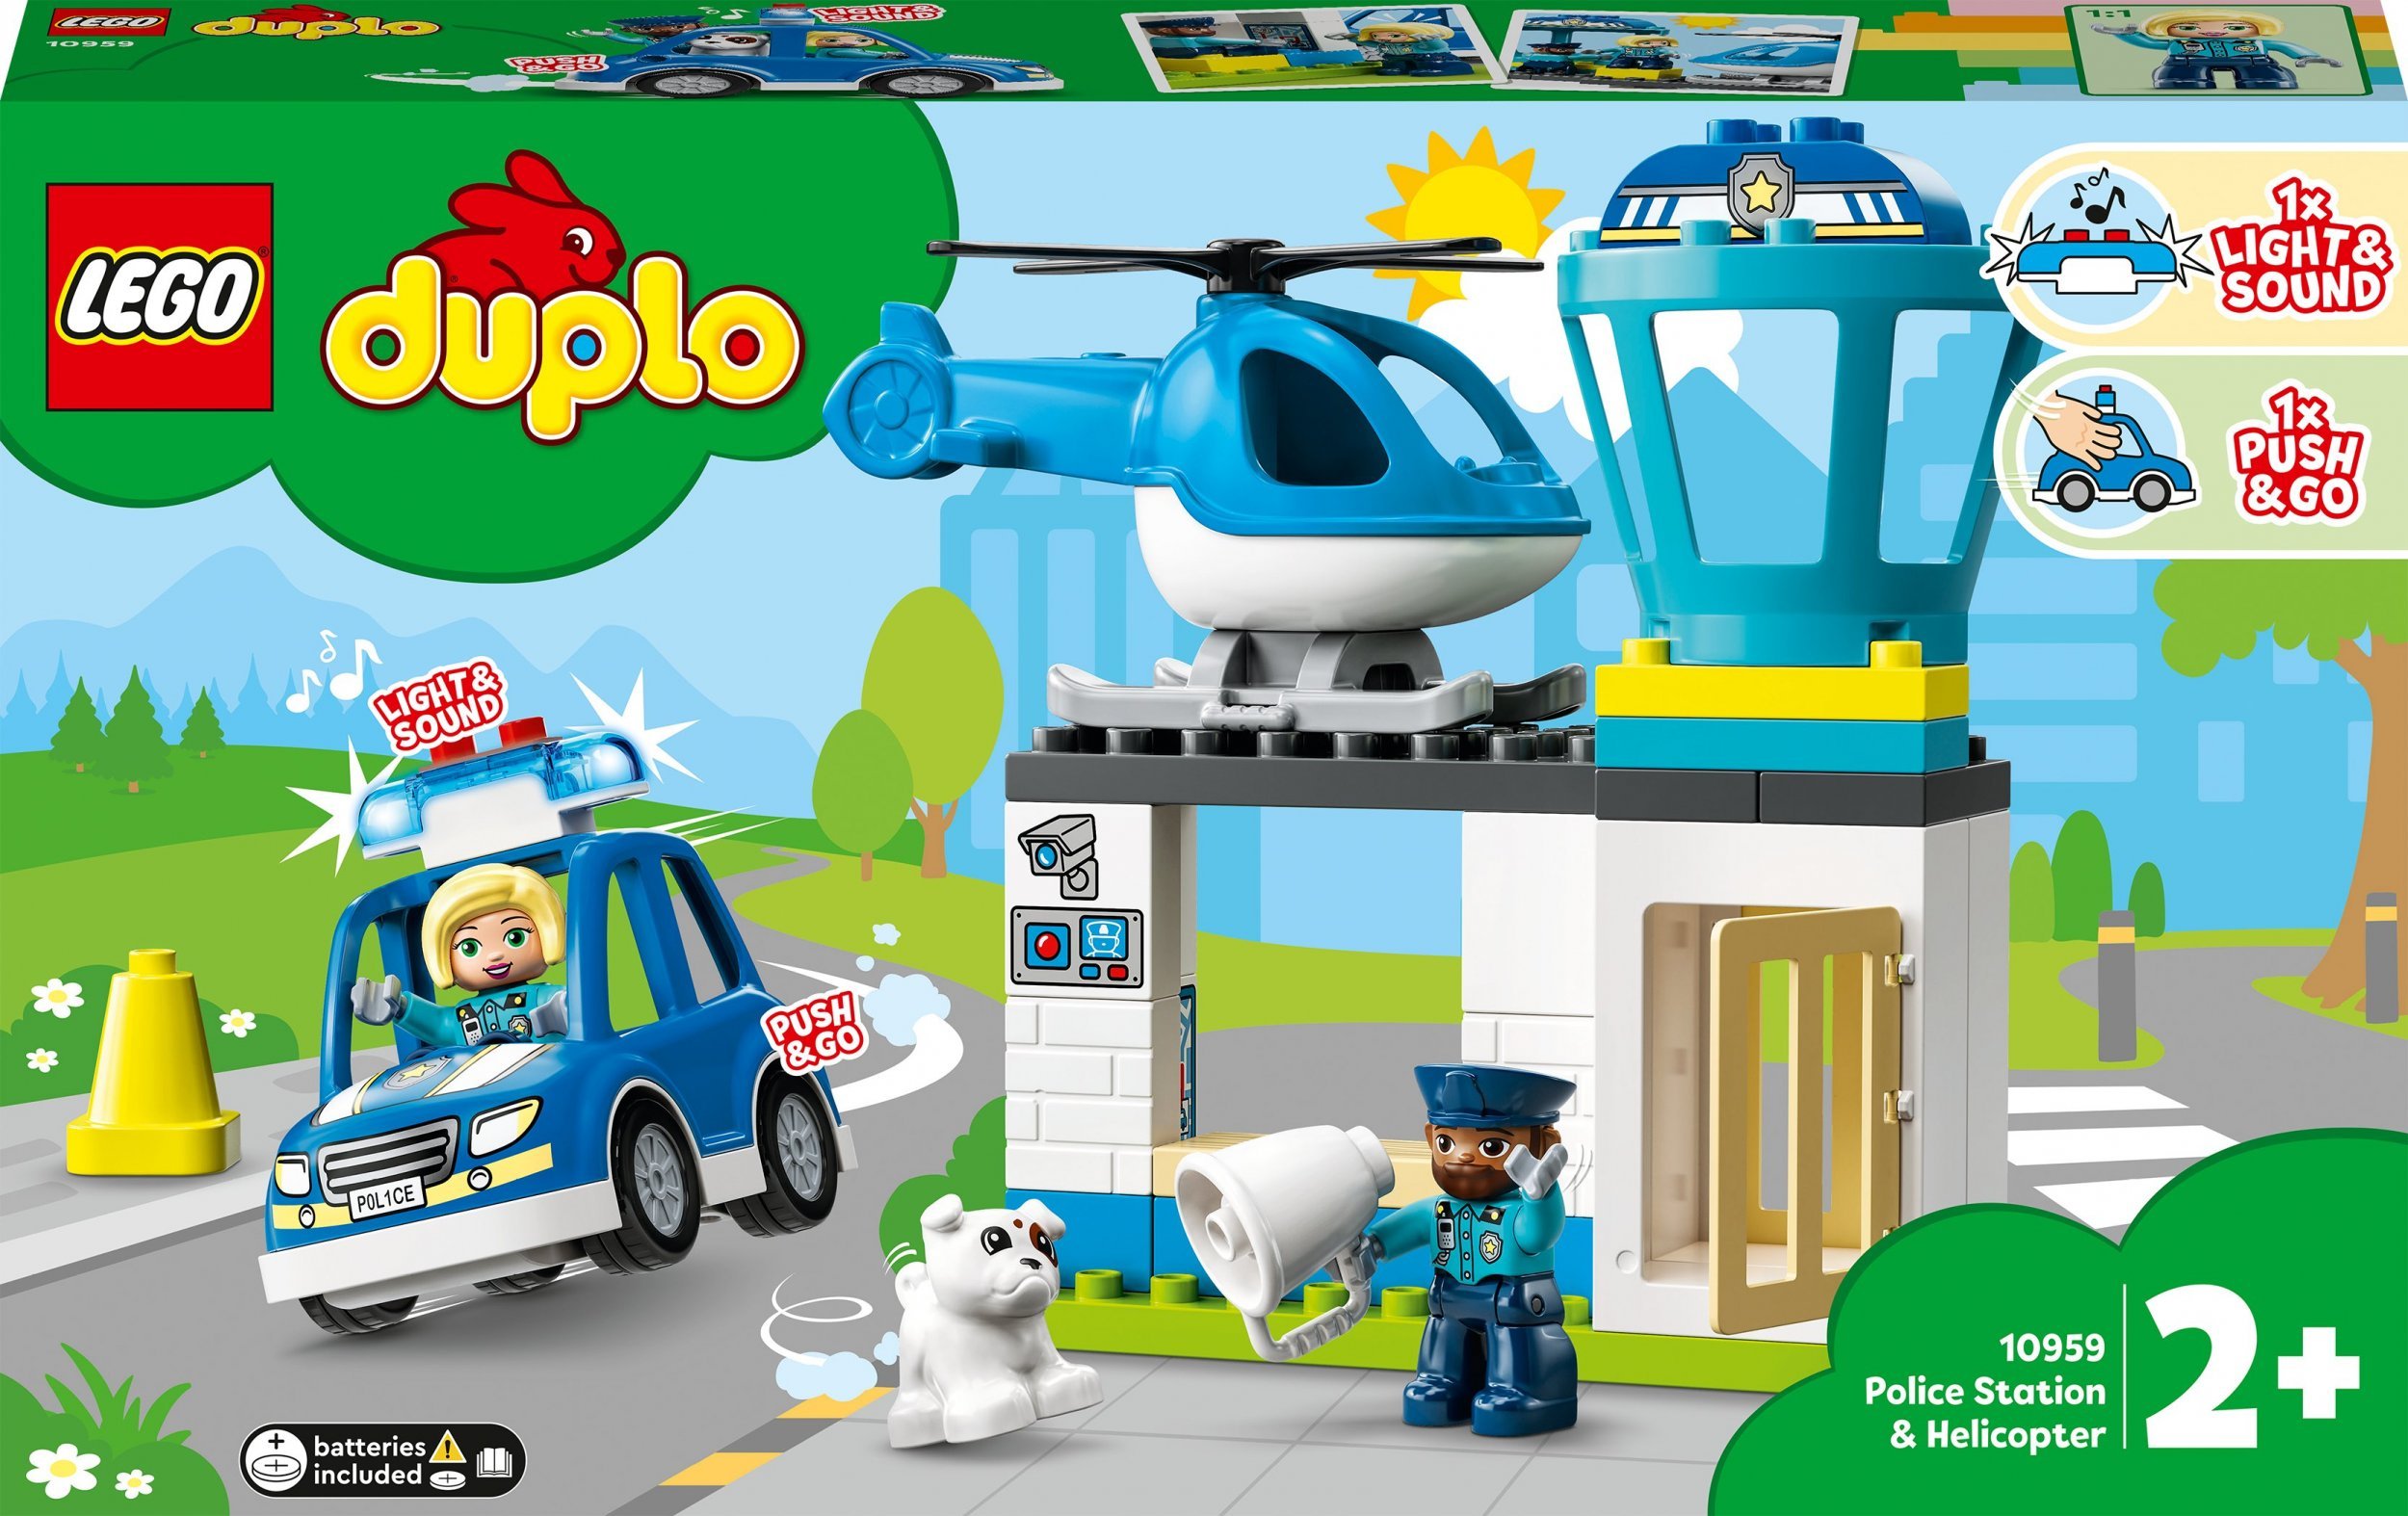 Secția de poliție și elicopterul LEGO Duplo (10959)